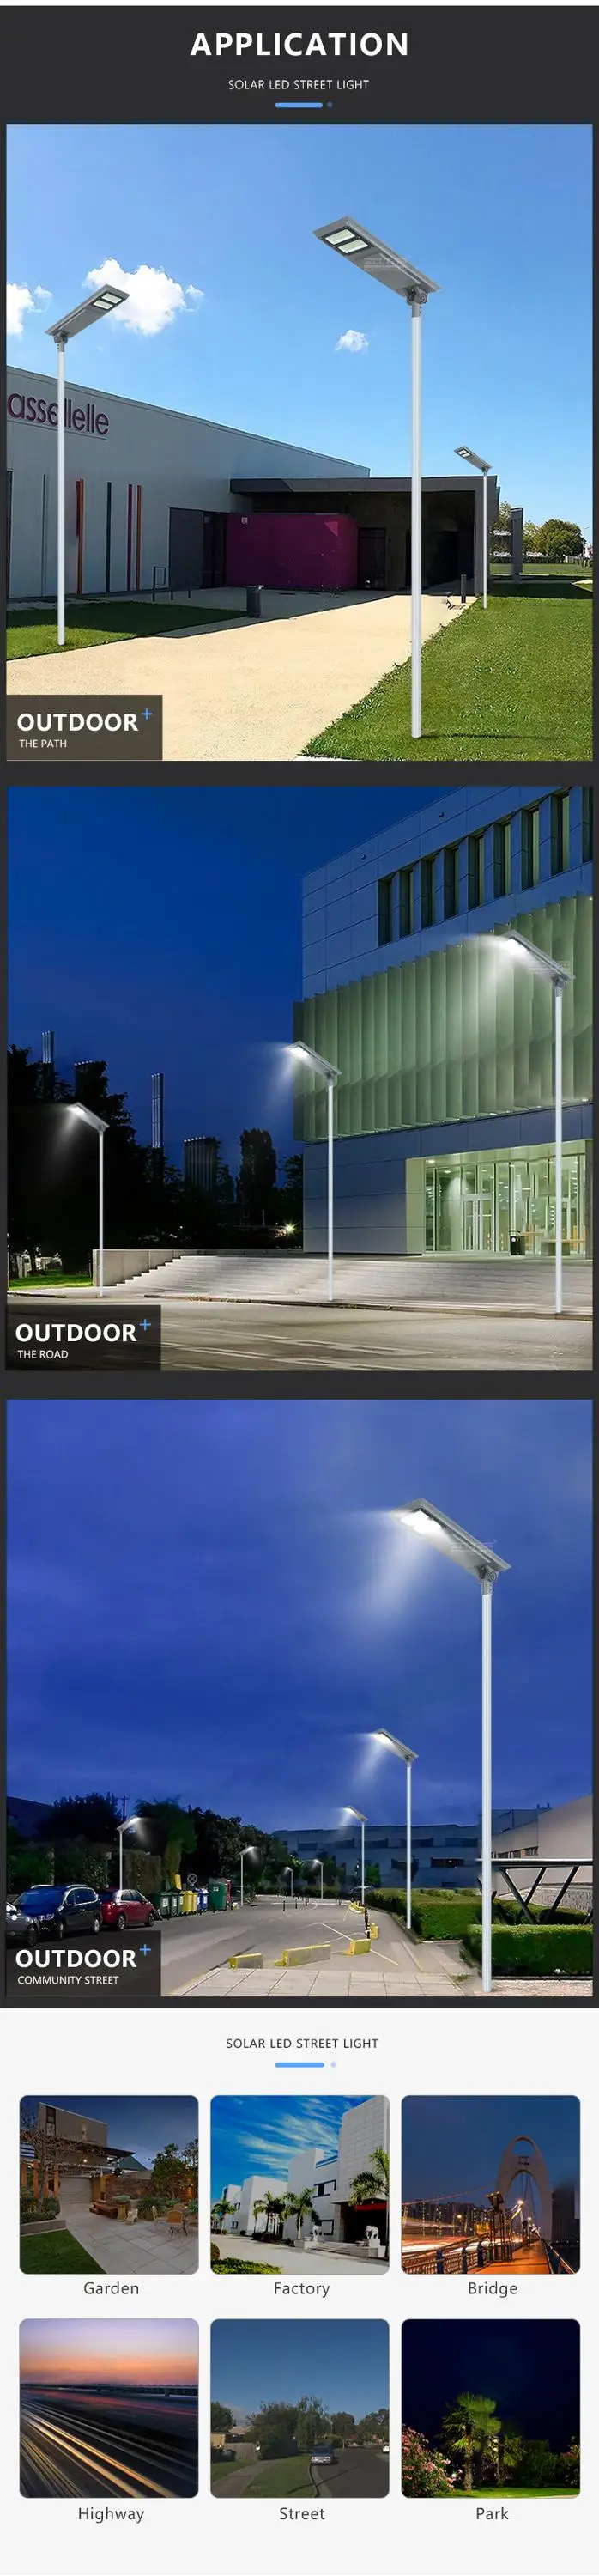 ALLTOP solar street lights manufacturer best quality manufacturer-13